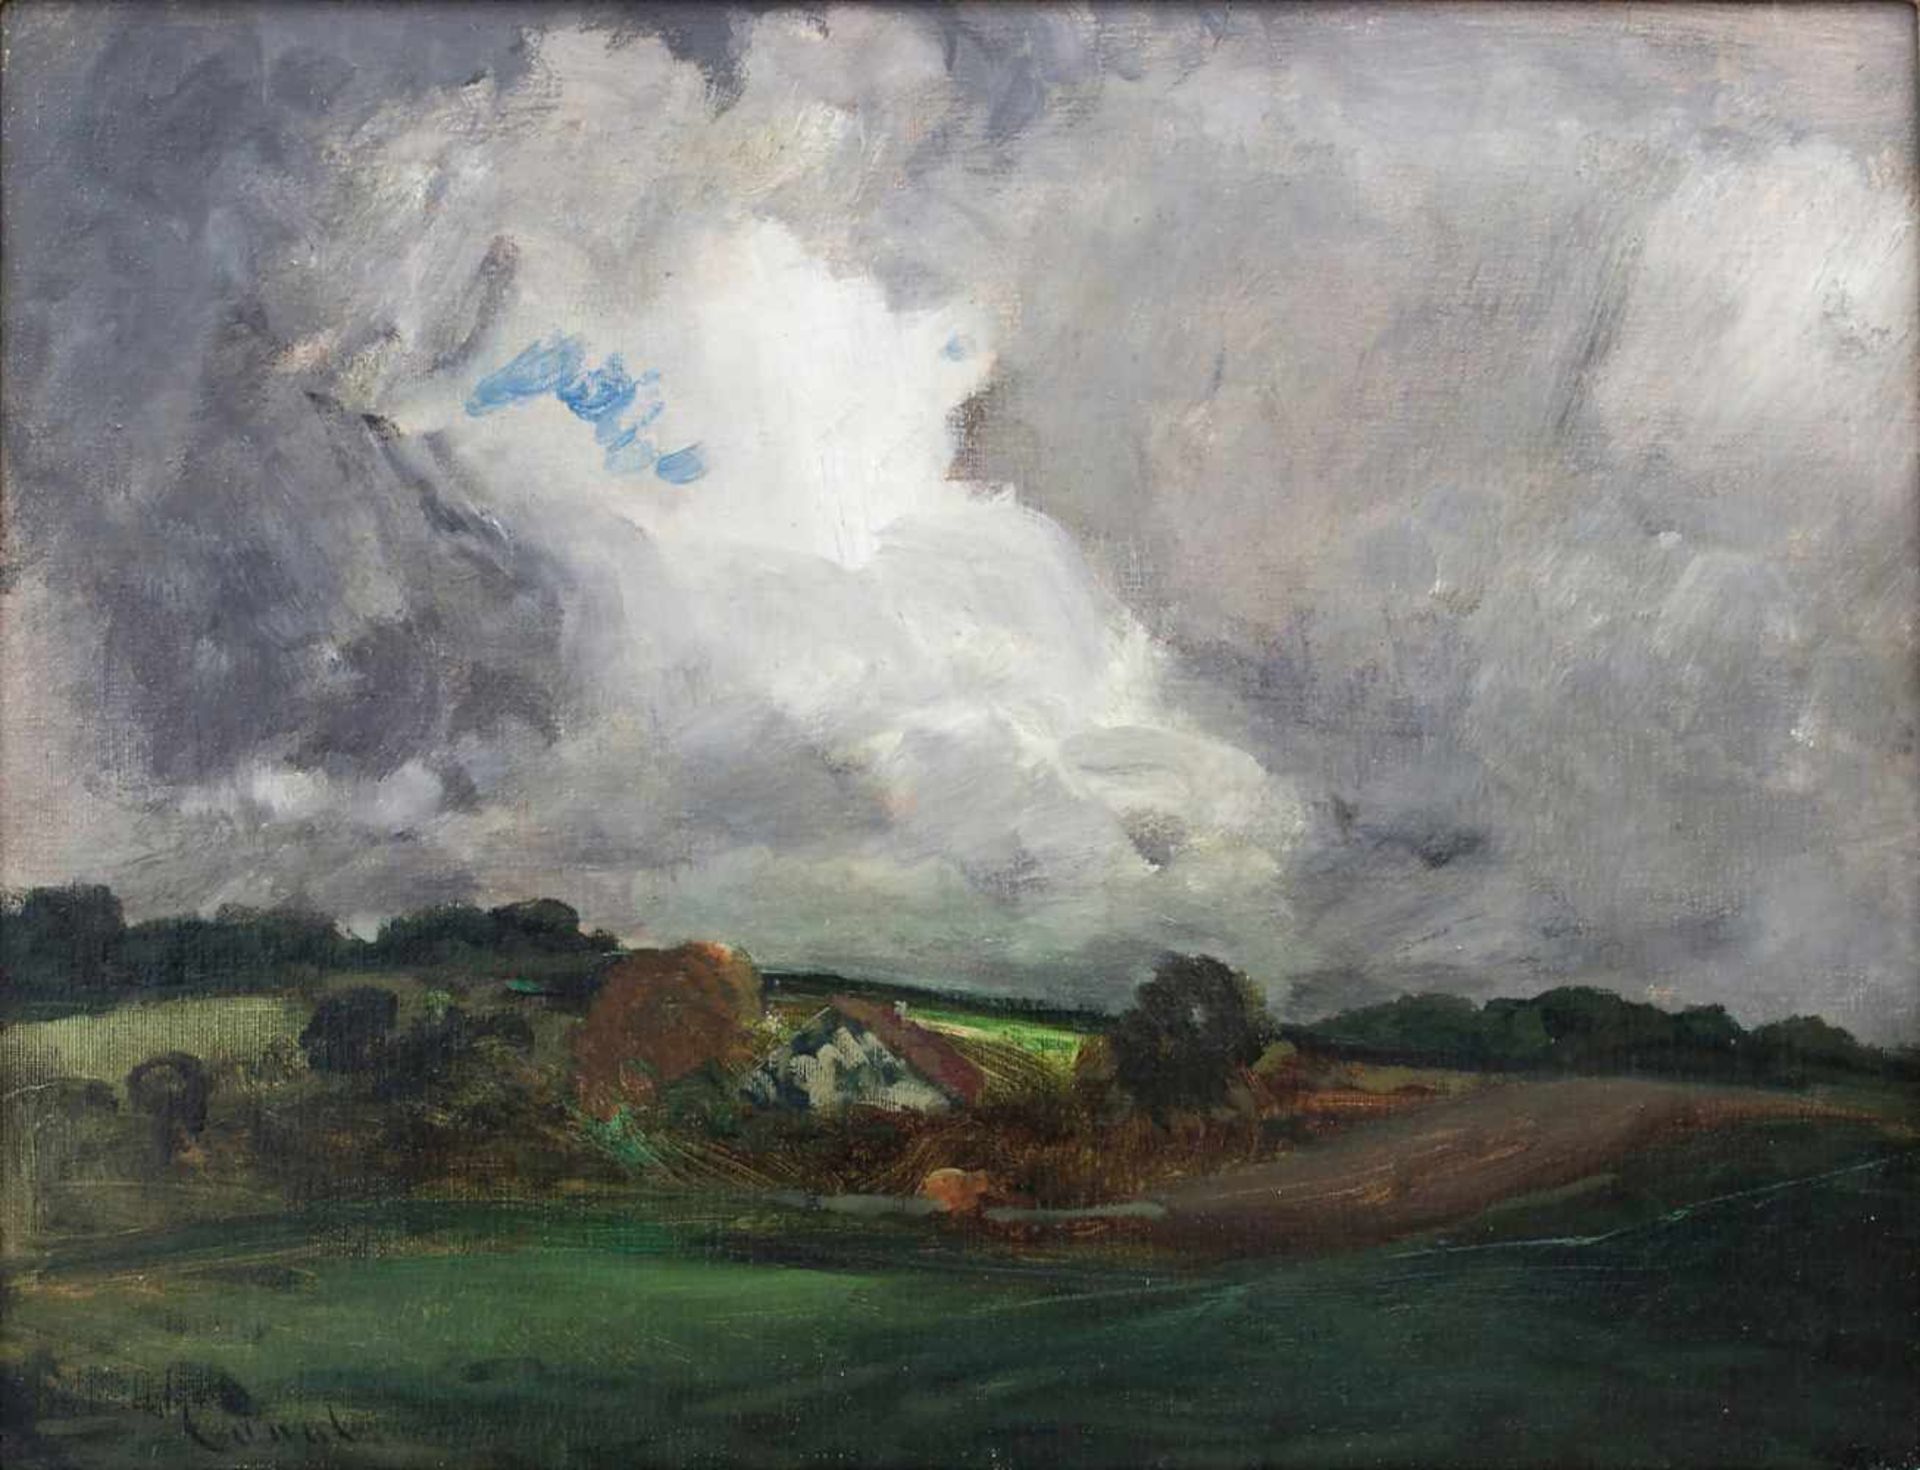 Gilbert von Canal (1849-1927), 'Landschaft mit Gewitterwolken' / 'A landscape with thunderclouds'